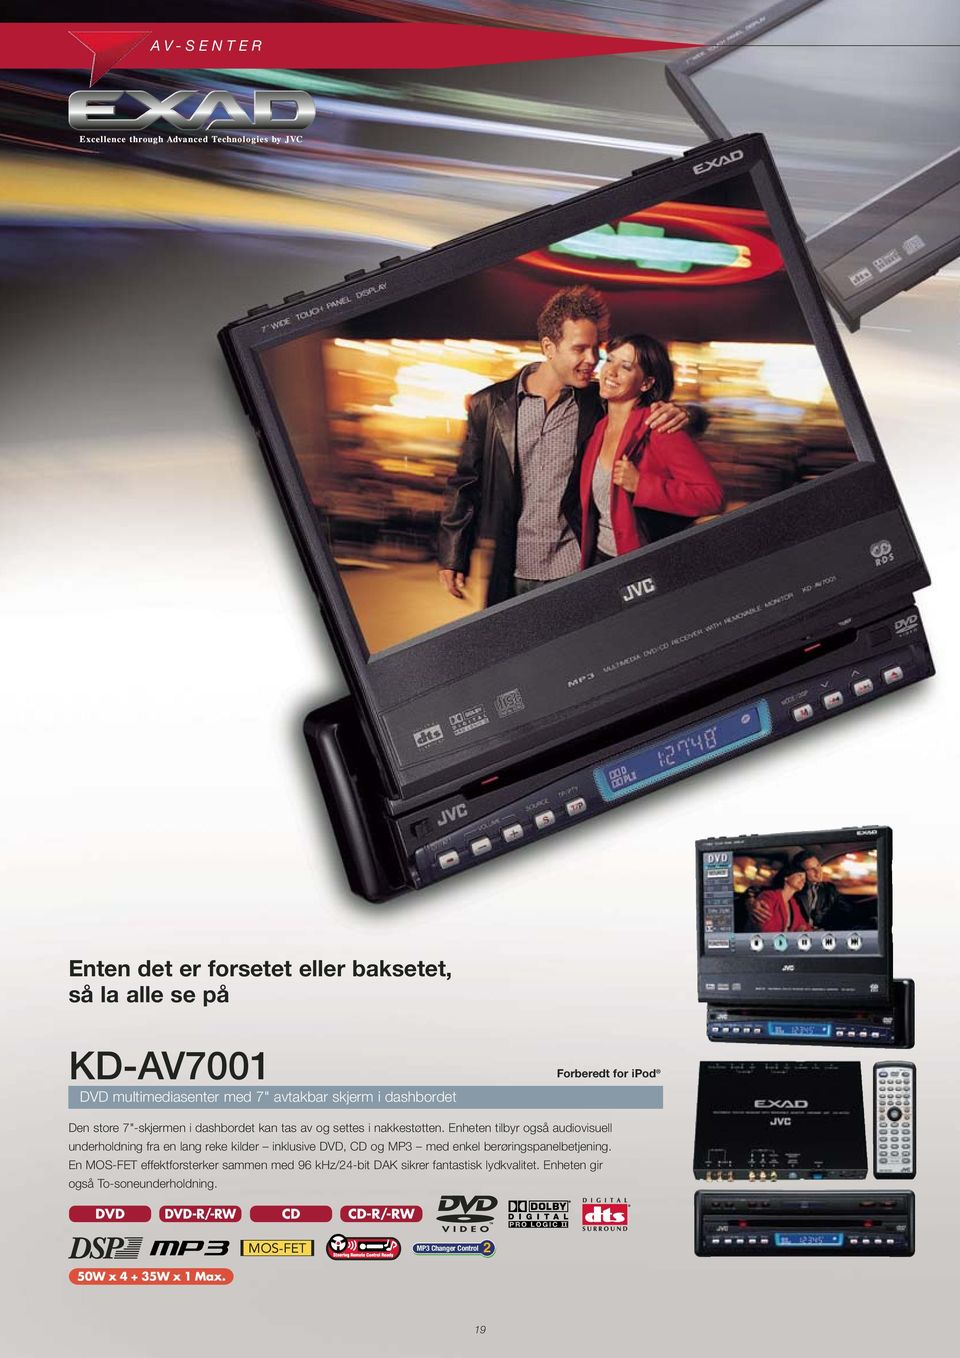 Enheten tilbyr også audiovisuell underholdning fra en lang reke kilder inklusive DVD, CD og MP3 med enkel berøringspanelbetjening.